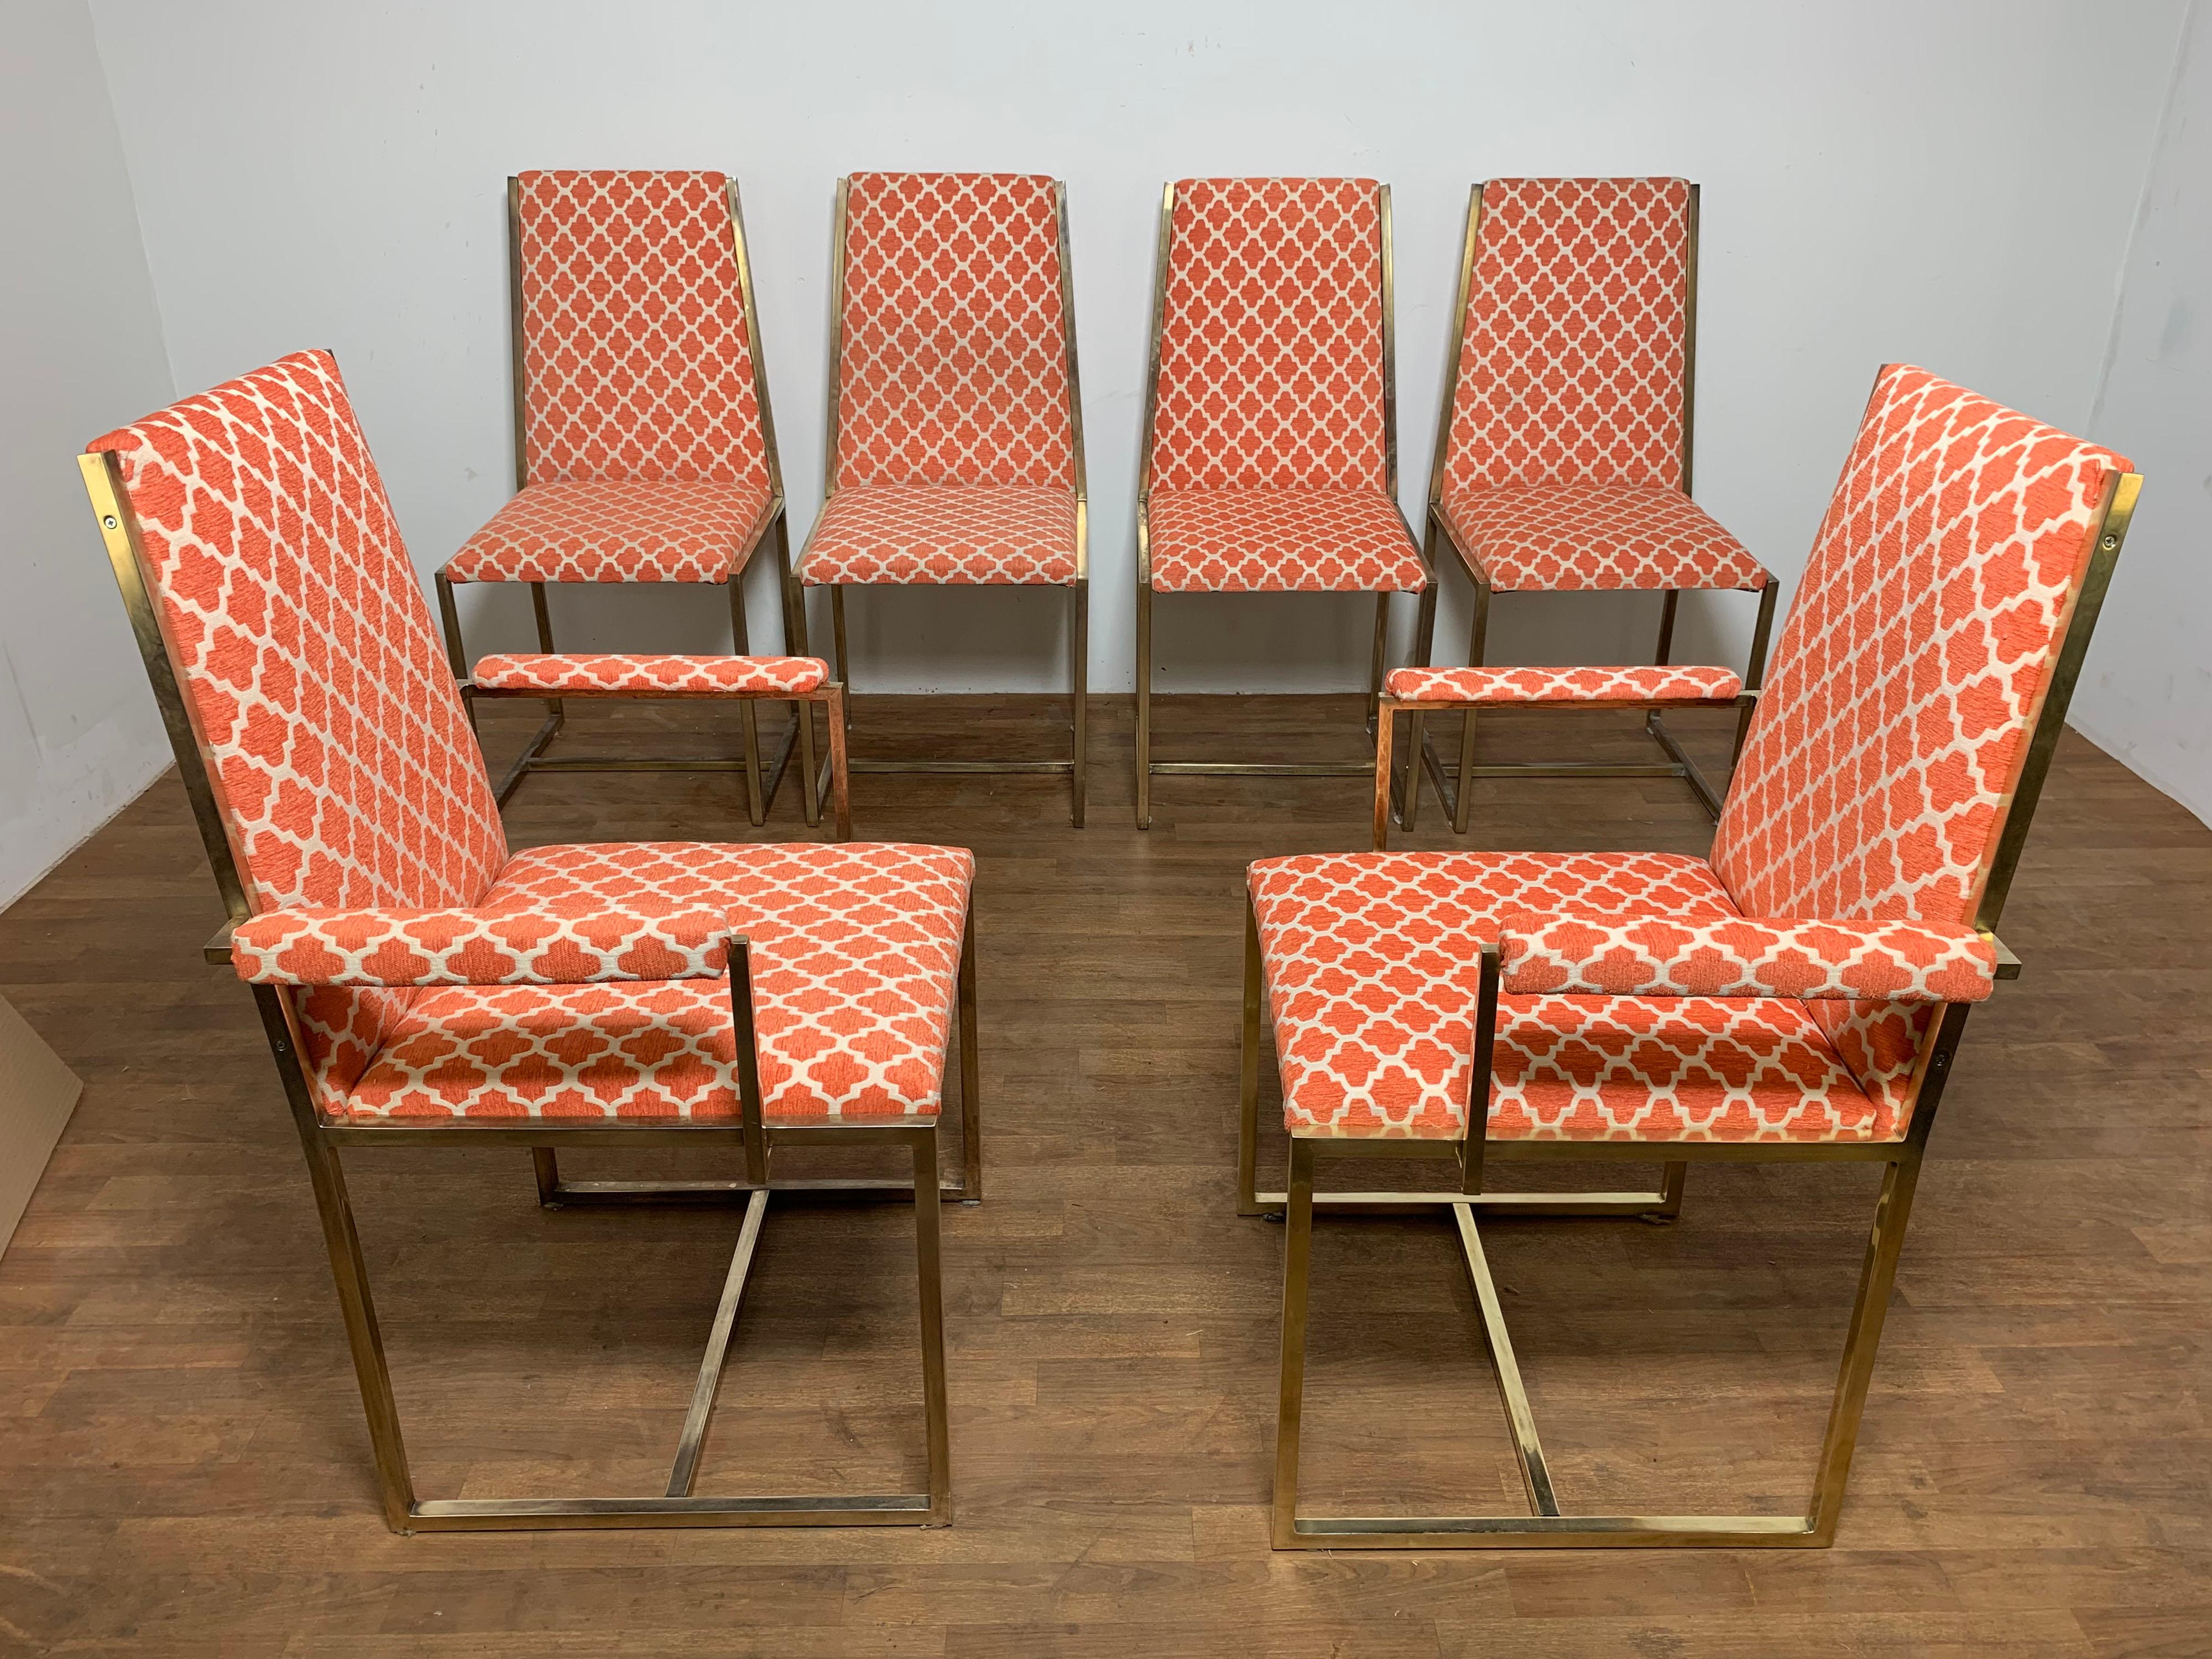 Ensemble de six chaises de salle à manger à haut dossier et à armature en laiton par Mastercraft, vers les années 1960. 

Les fauteuils mesurent 24,75